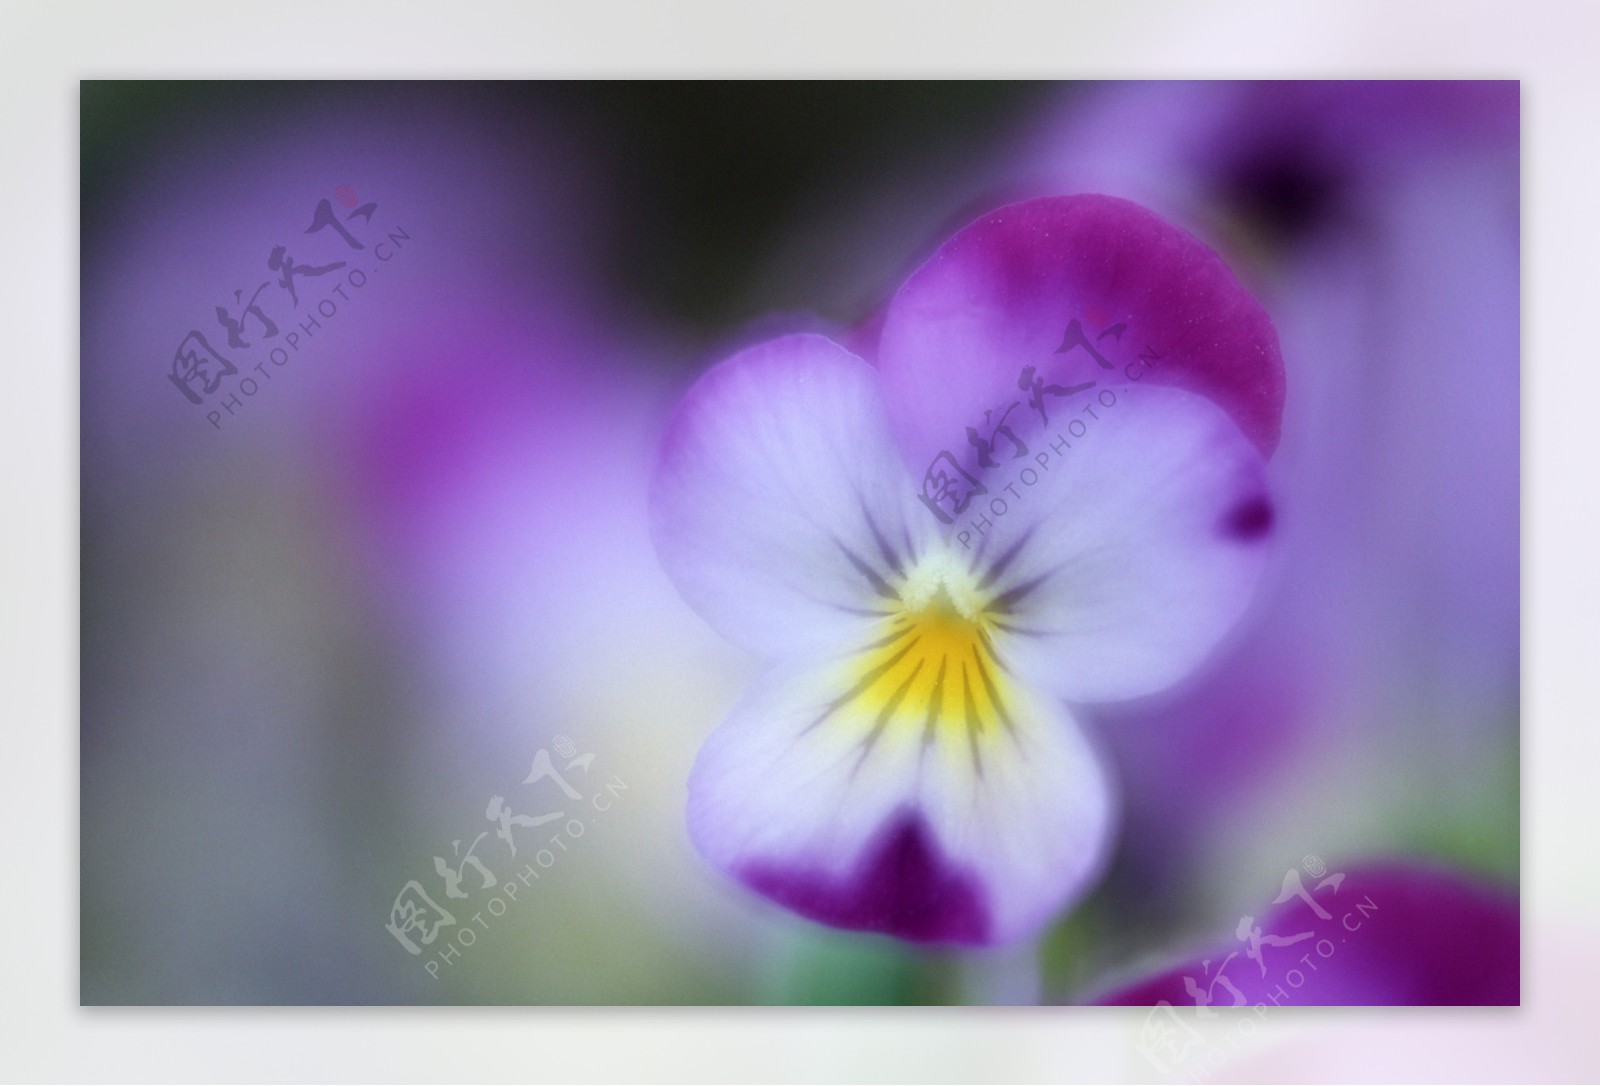 紫色小野花图片